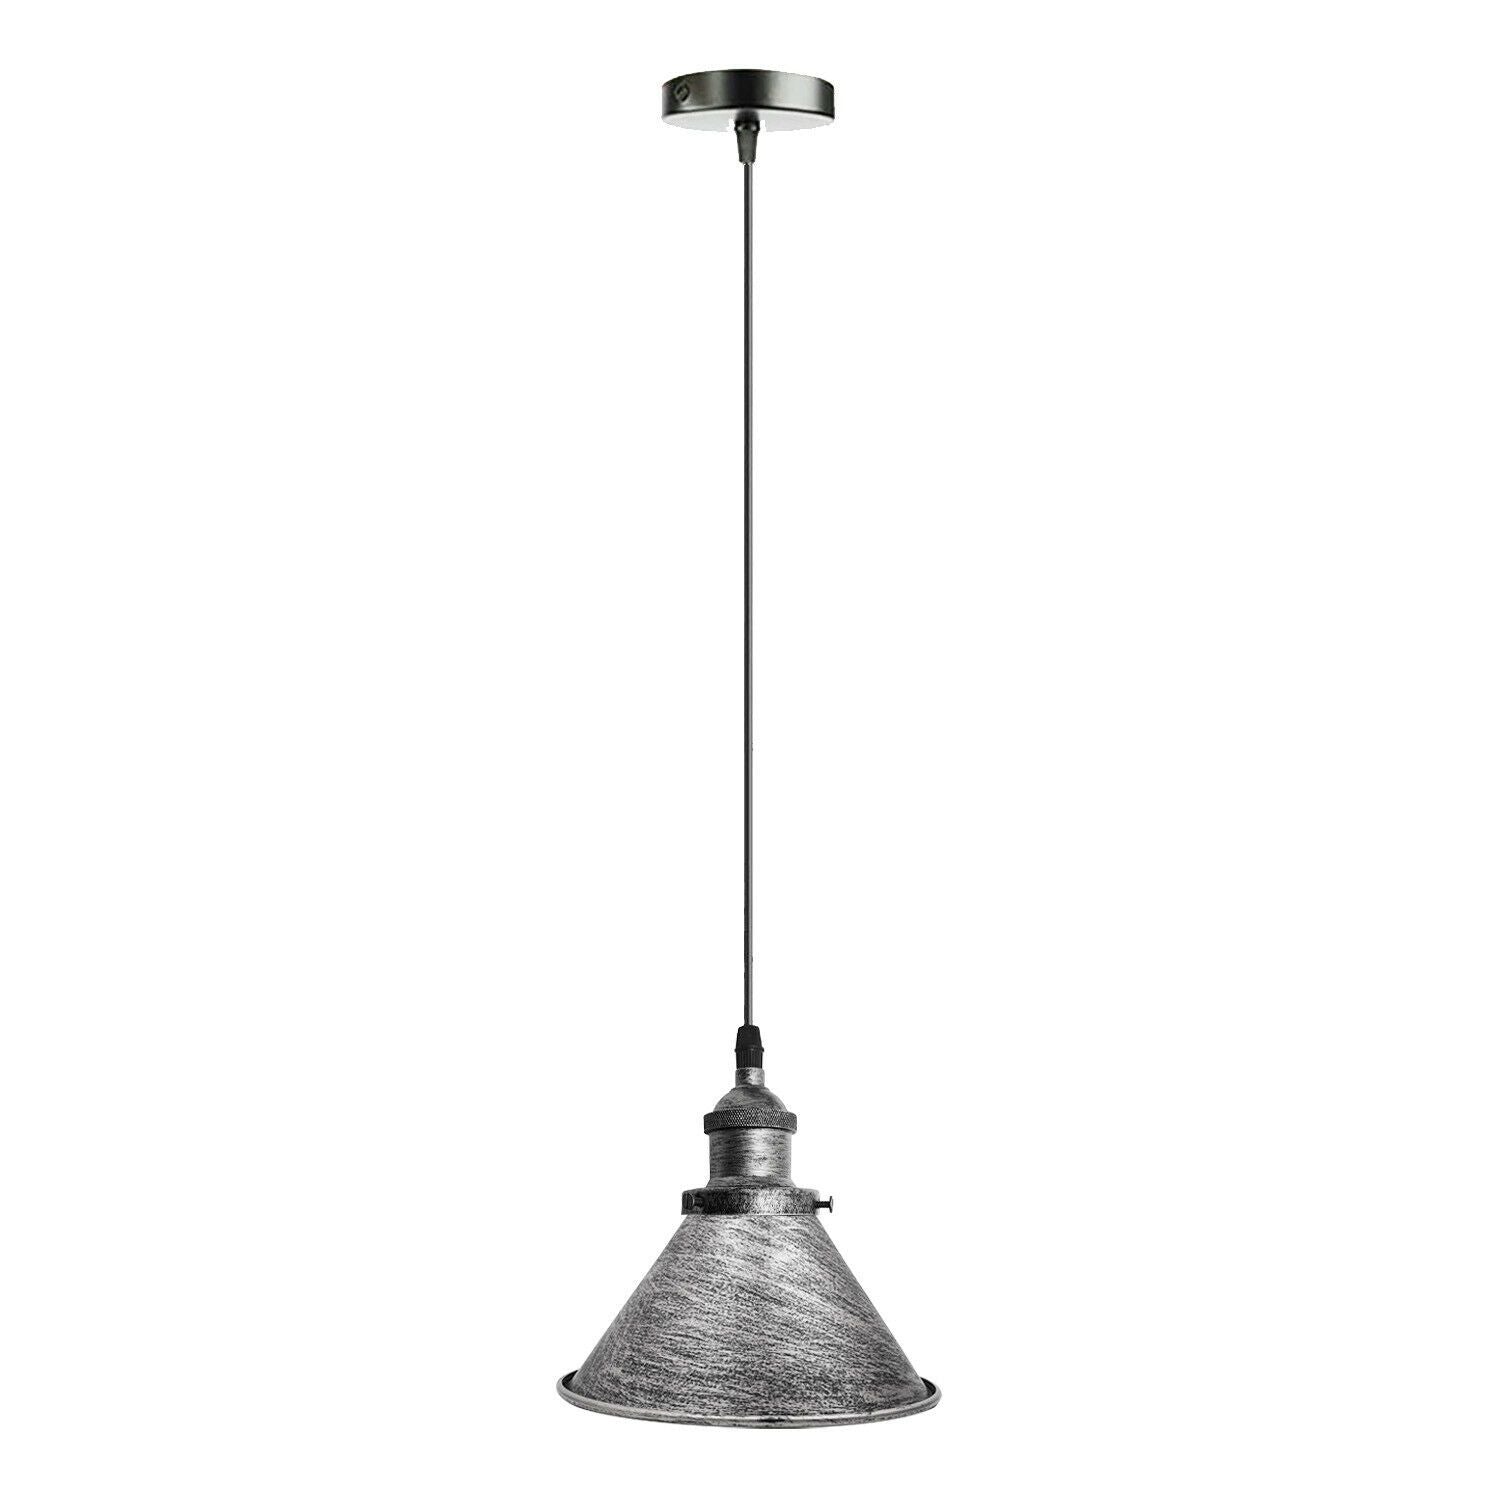  Industrial Retro Loft Metal Cone Shade Ceiling Pendant Light